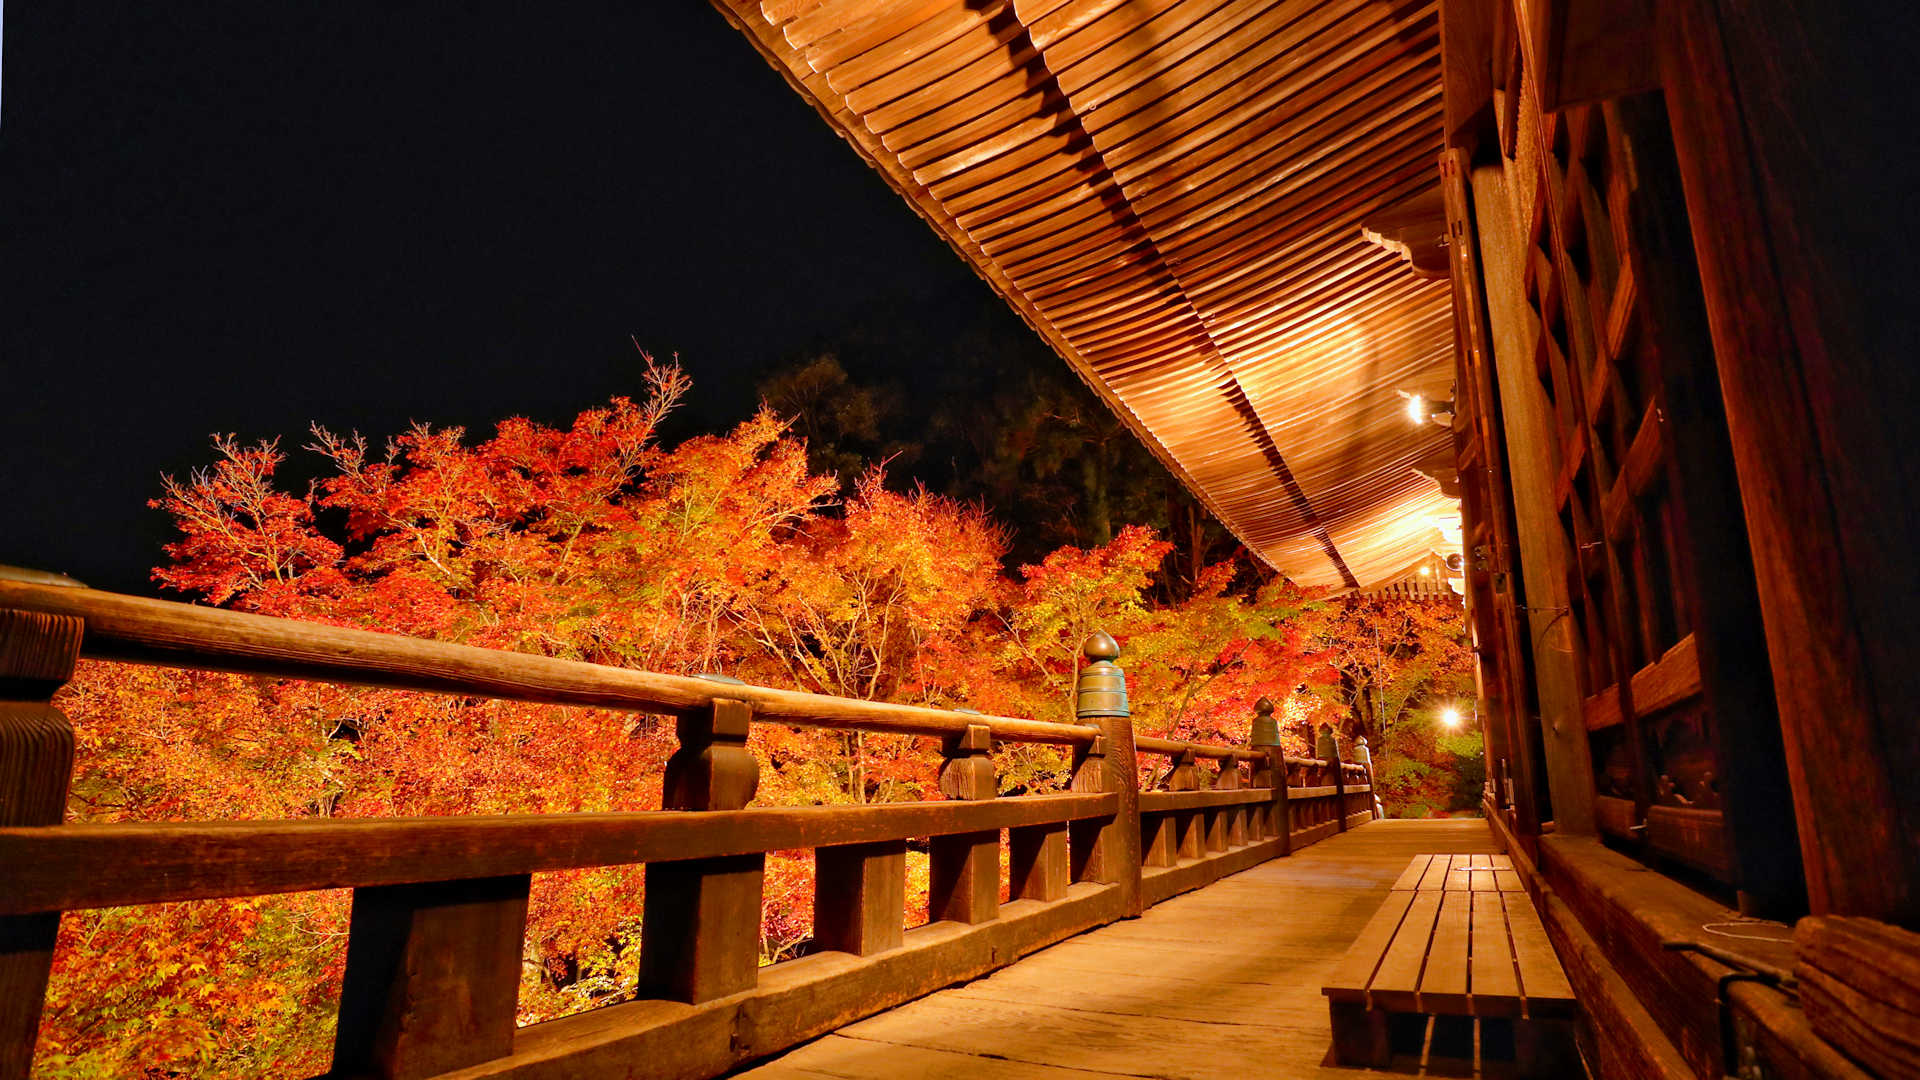 播州清水寺 千燈会 と紅葉ライトアップ 大紅葉まつり も同時開催